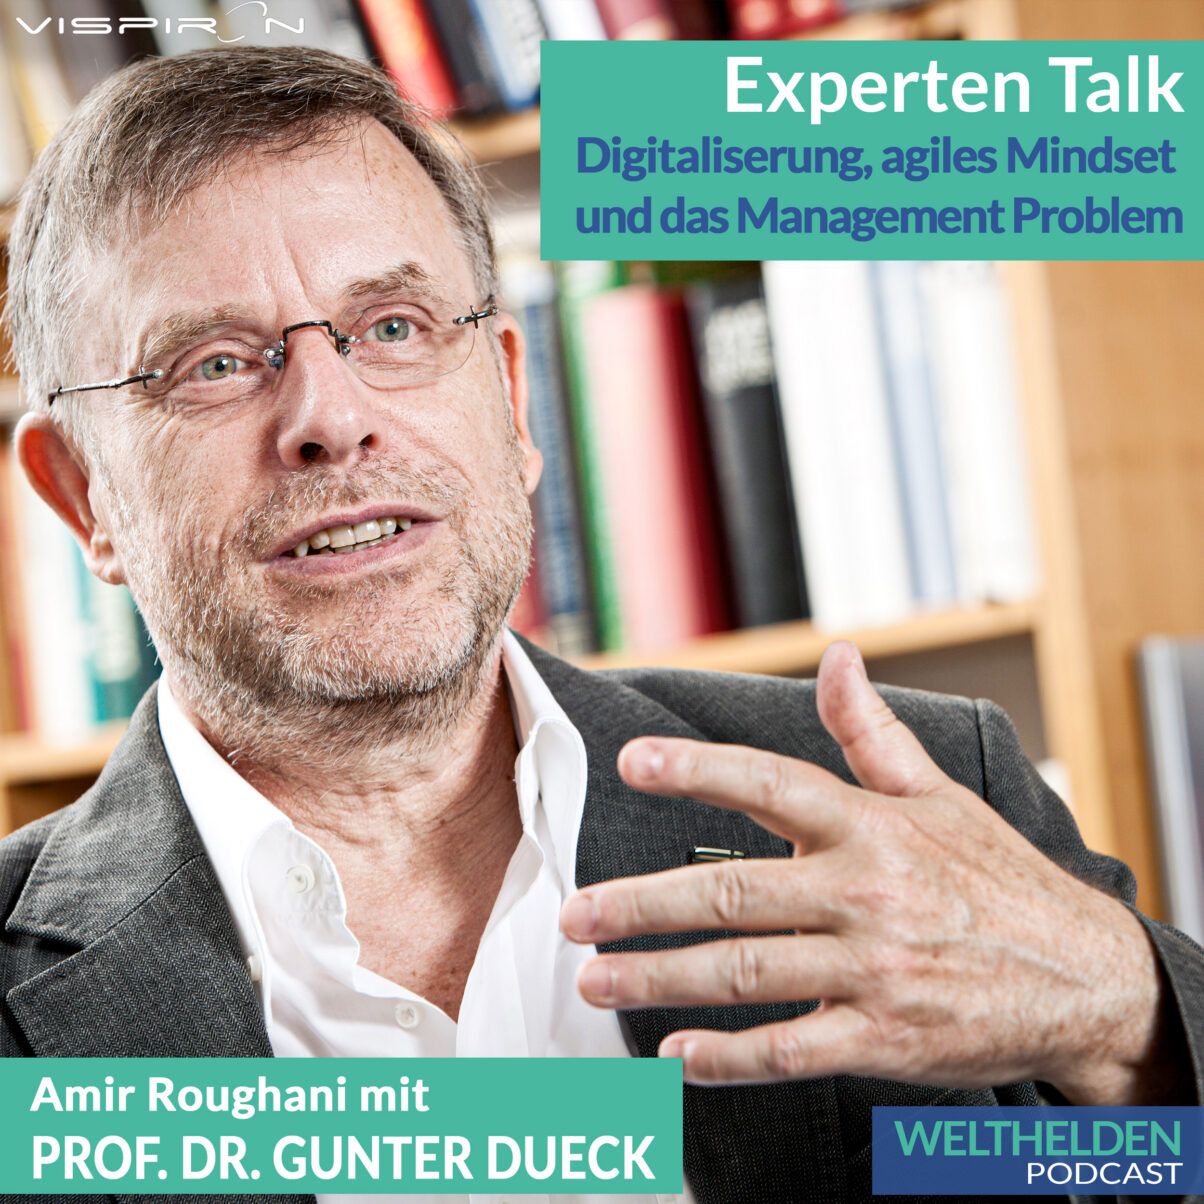 Profilfoto von Professor Dr. Gunter Dueck im Experten Talk des Weltheldenpodcasts